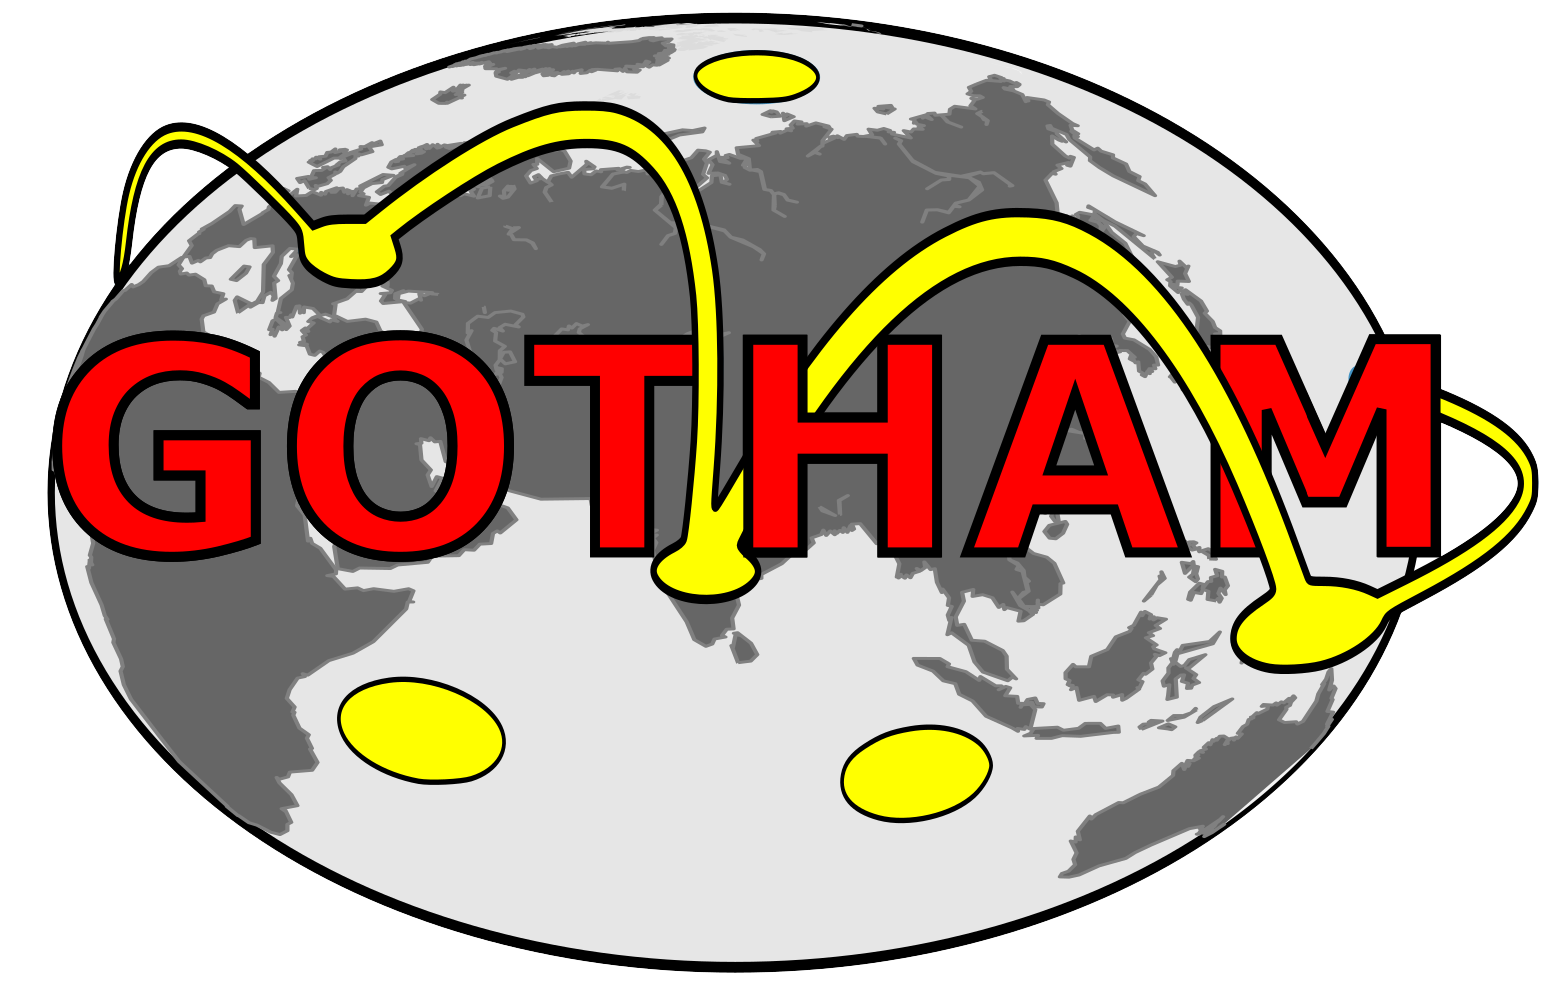 GOTHAM logo